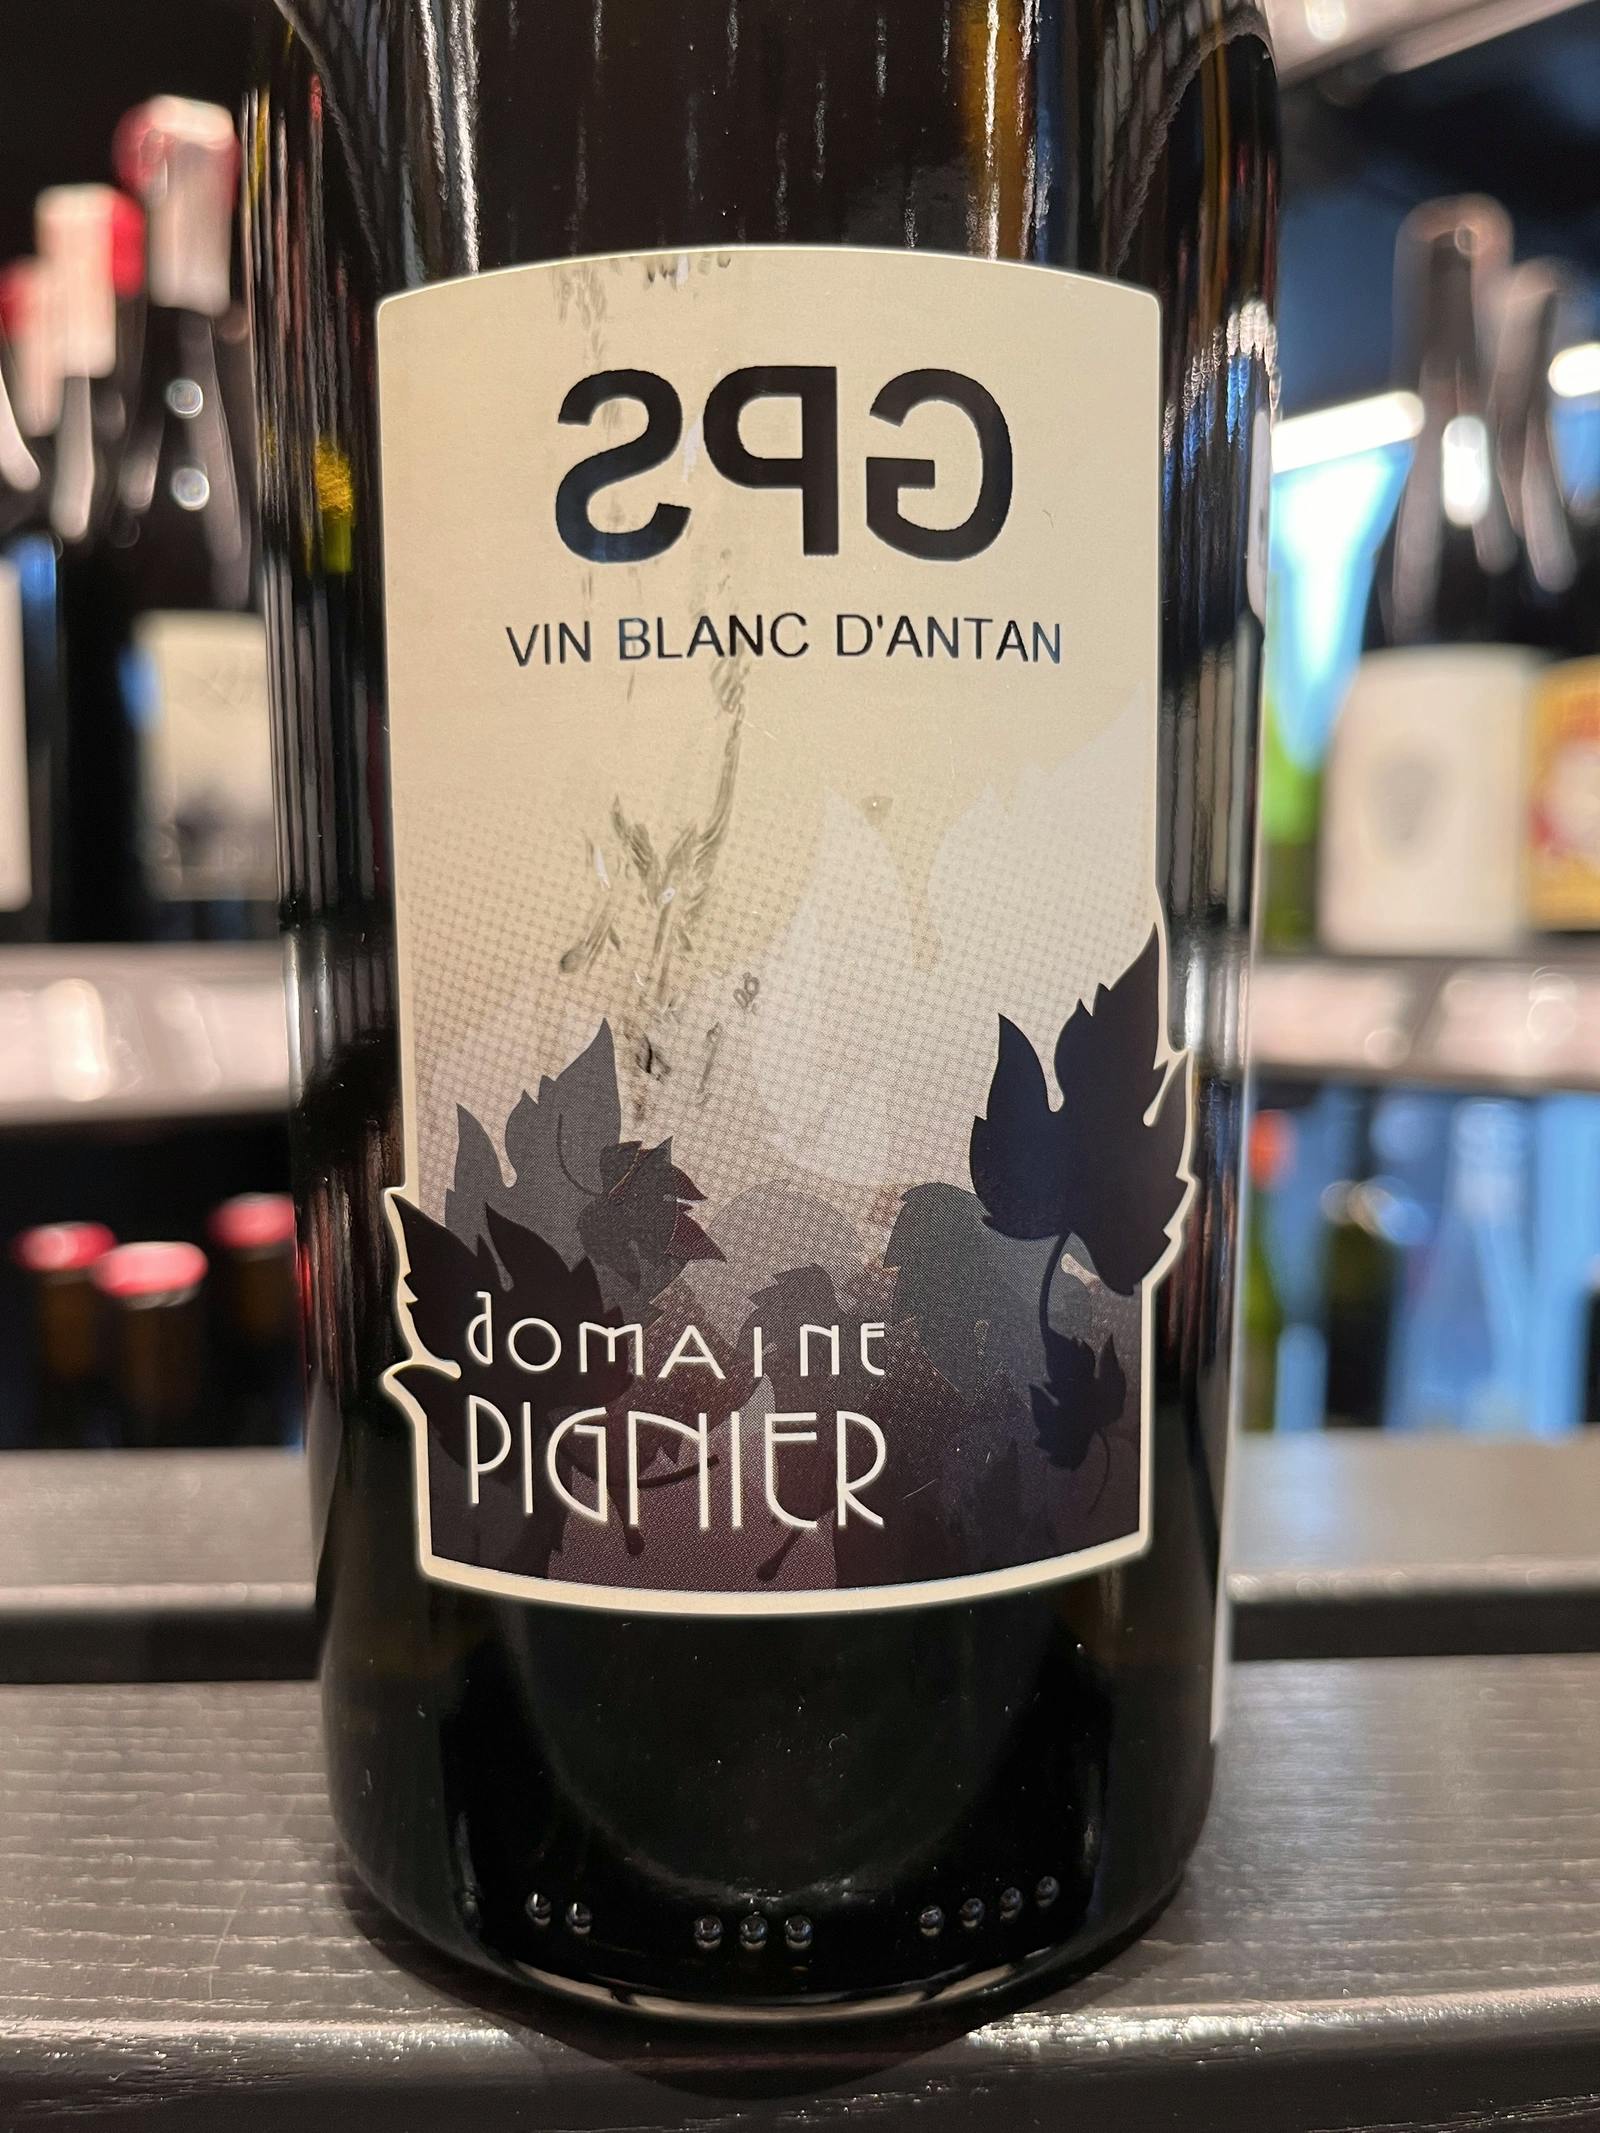 Domaine Pignier GPS Vin Blanc d'Antan 2018